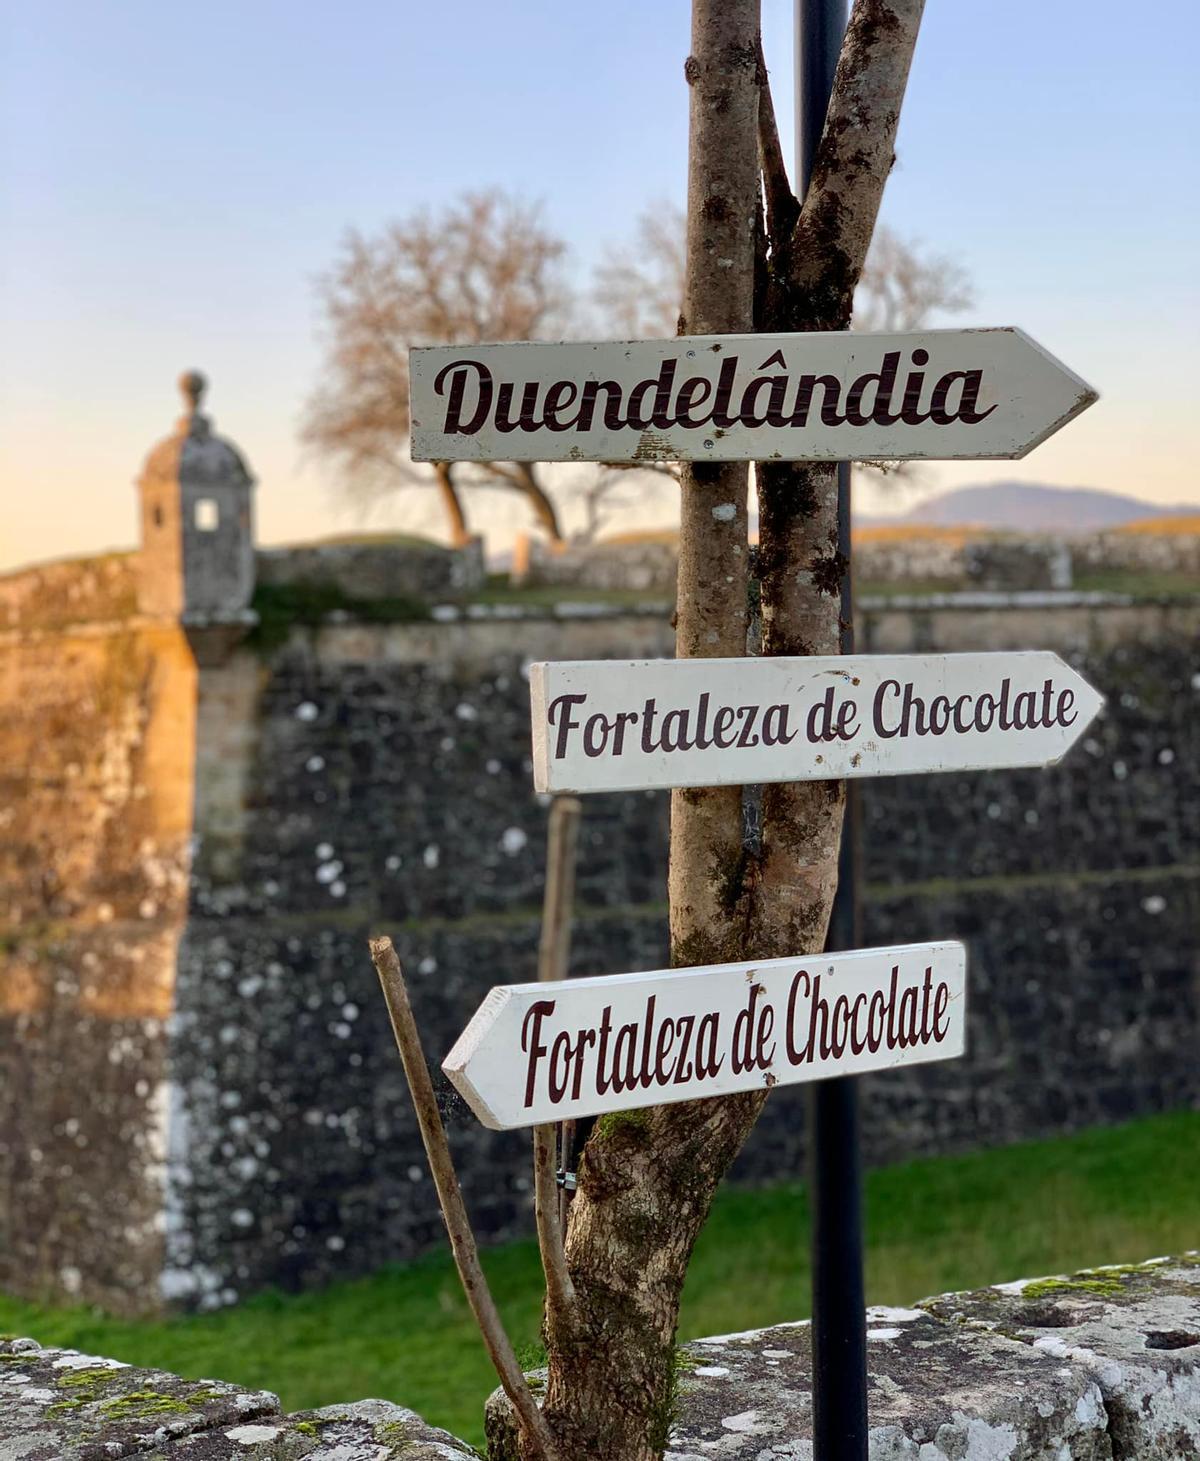 Duendelandia o la Fortaleza de Chocolate son dos de los atractivos de la Navida en Valença.